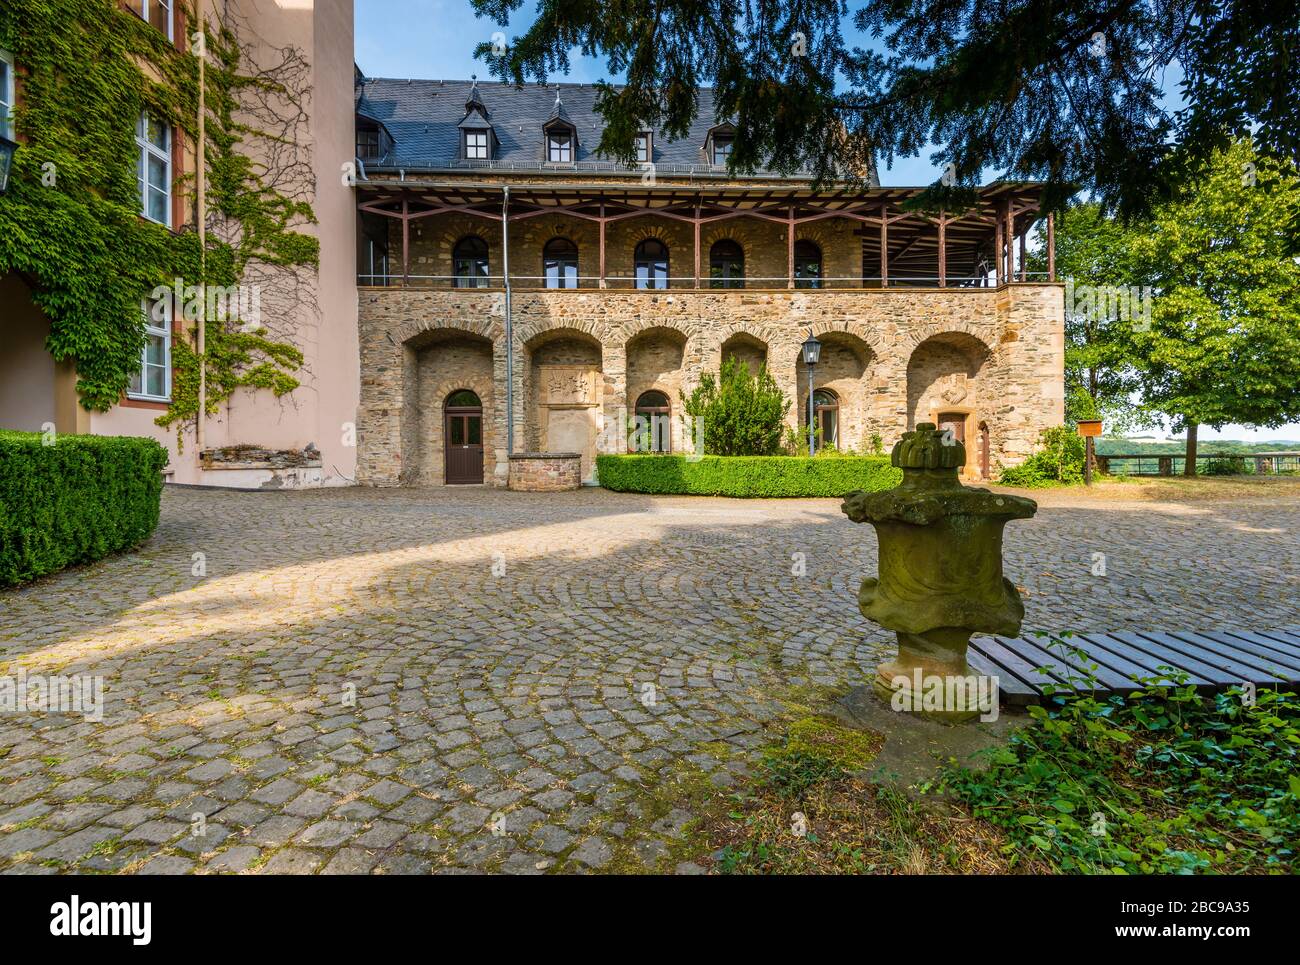 Schloss Dhaun bei Hochstetten-Dhaun an der nahe, Burgruine, deren palas die große Anlage "Heim Volkshochschule Schloss Dhaun" beherbergt Stockfoto